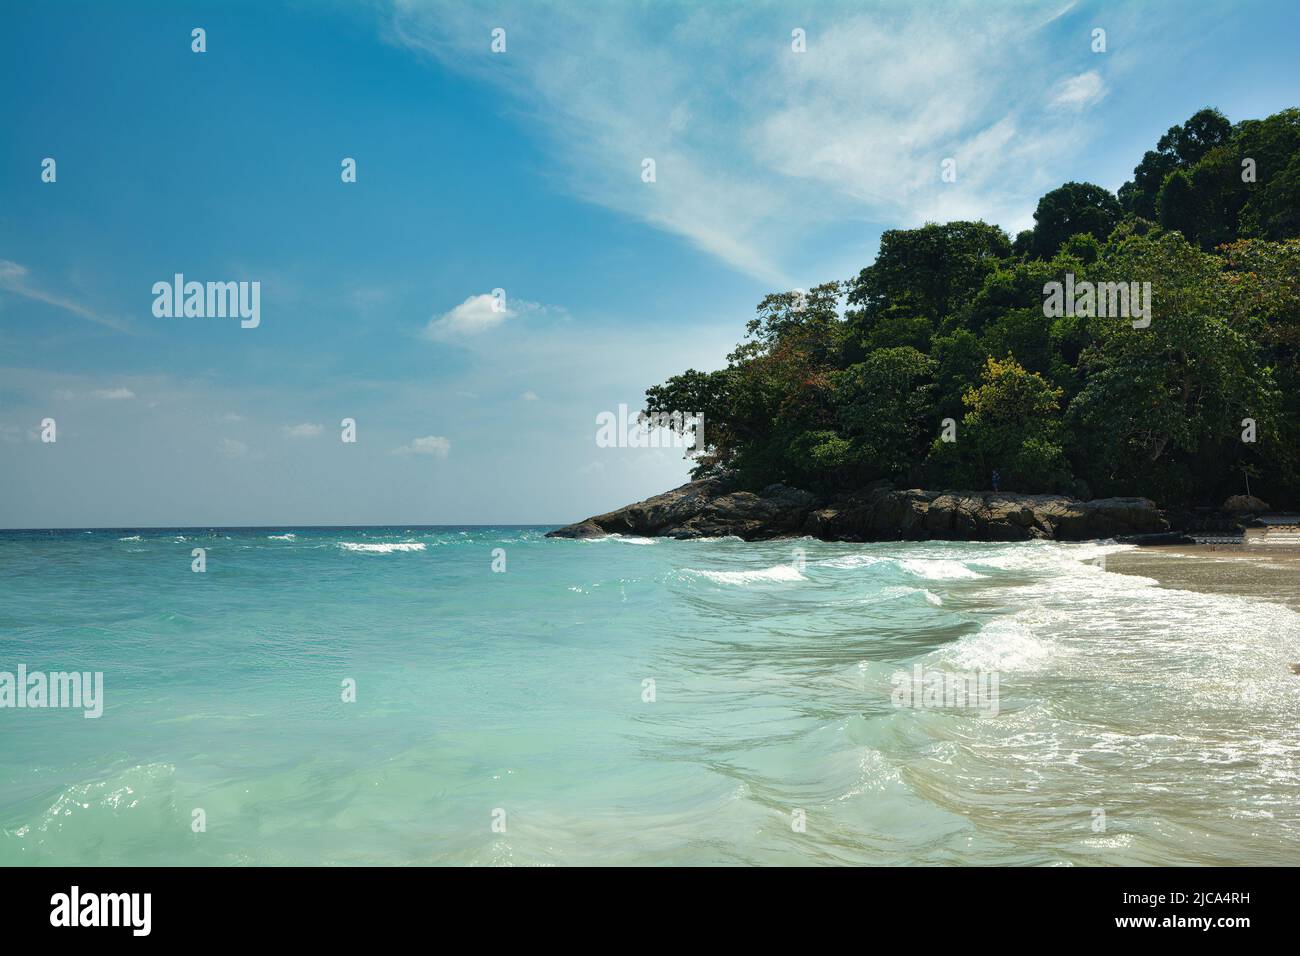 Las famosas playas, las tranquilas bahías y los bosques tropicales hacen de Phuket el más rico, turístico y popular entre las islas del sur de Tailandia. Foto de stock